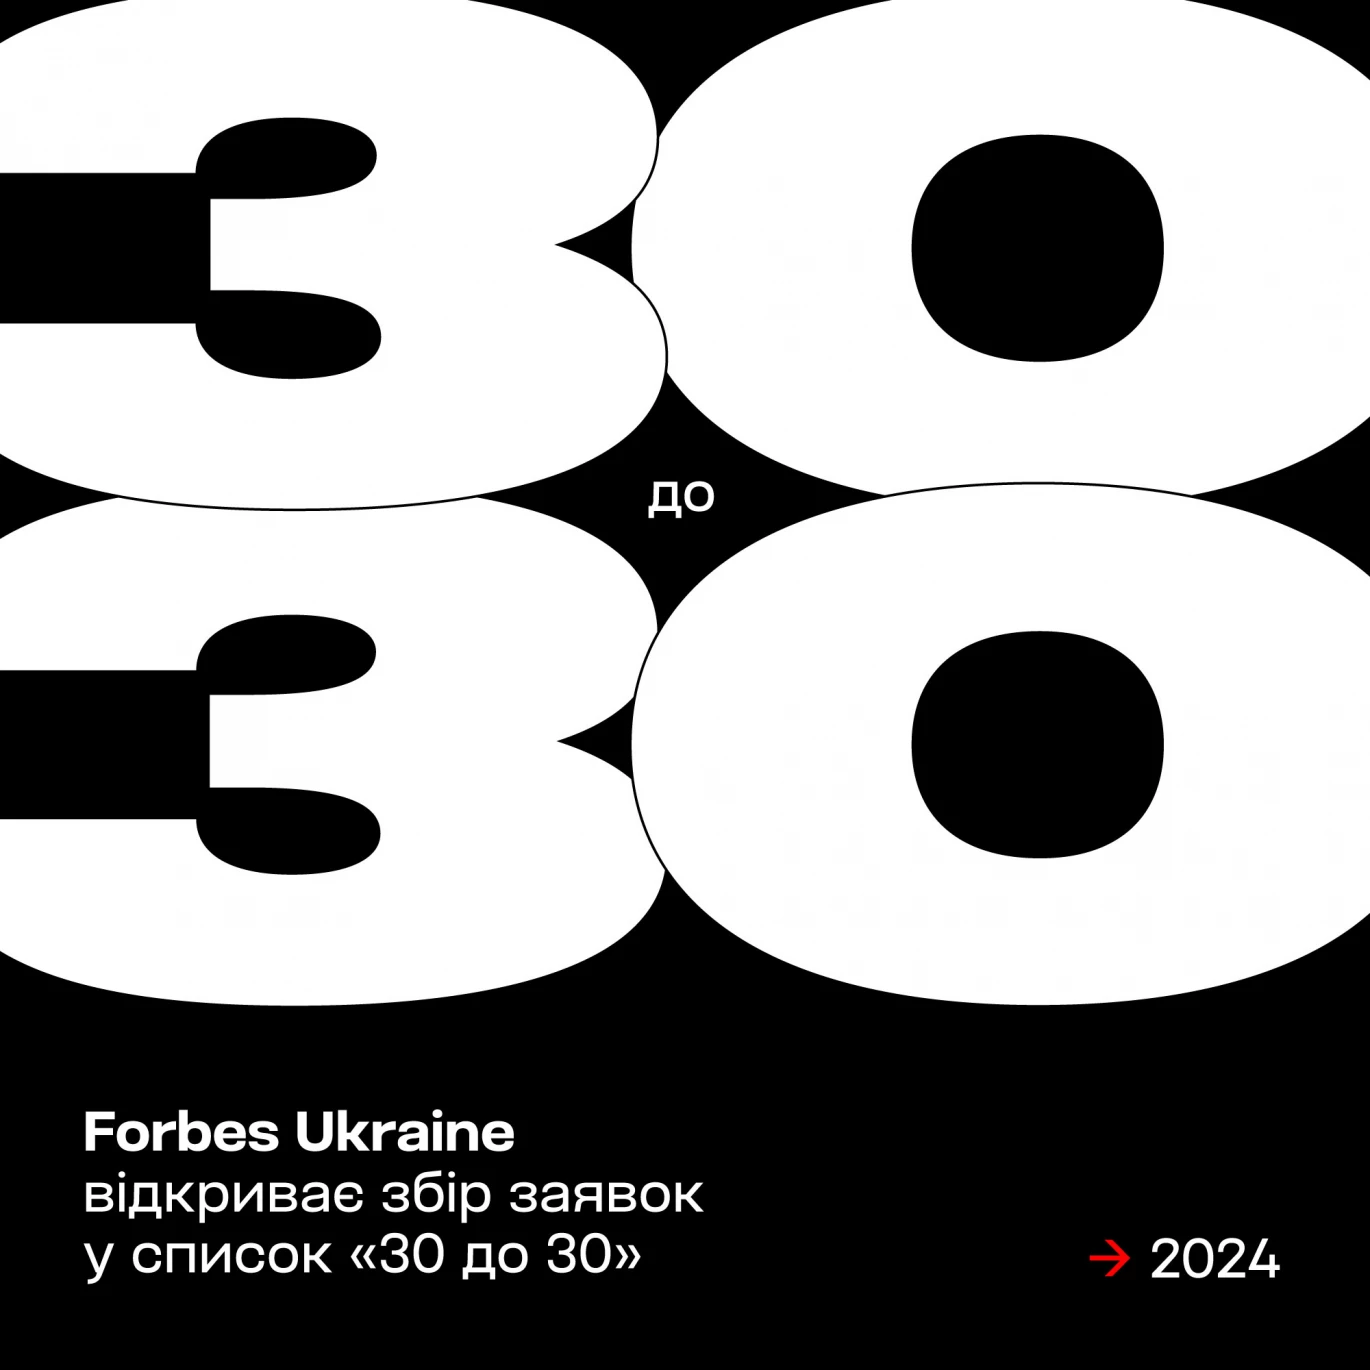 Forbes Ukraine оголосив збір заявок до списку майбутніх лідерів країни «30 до 30»